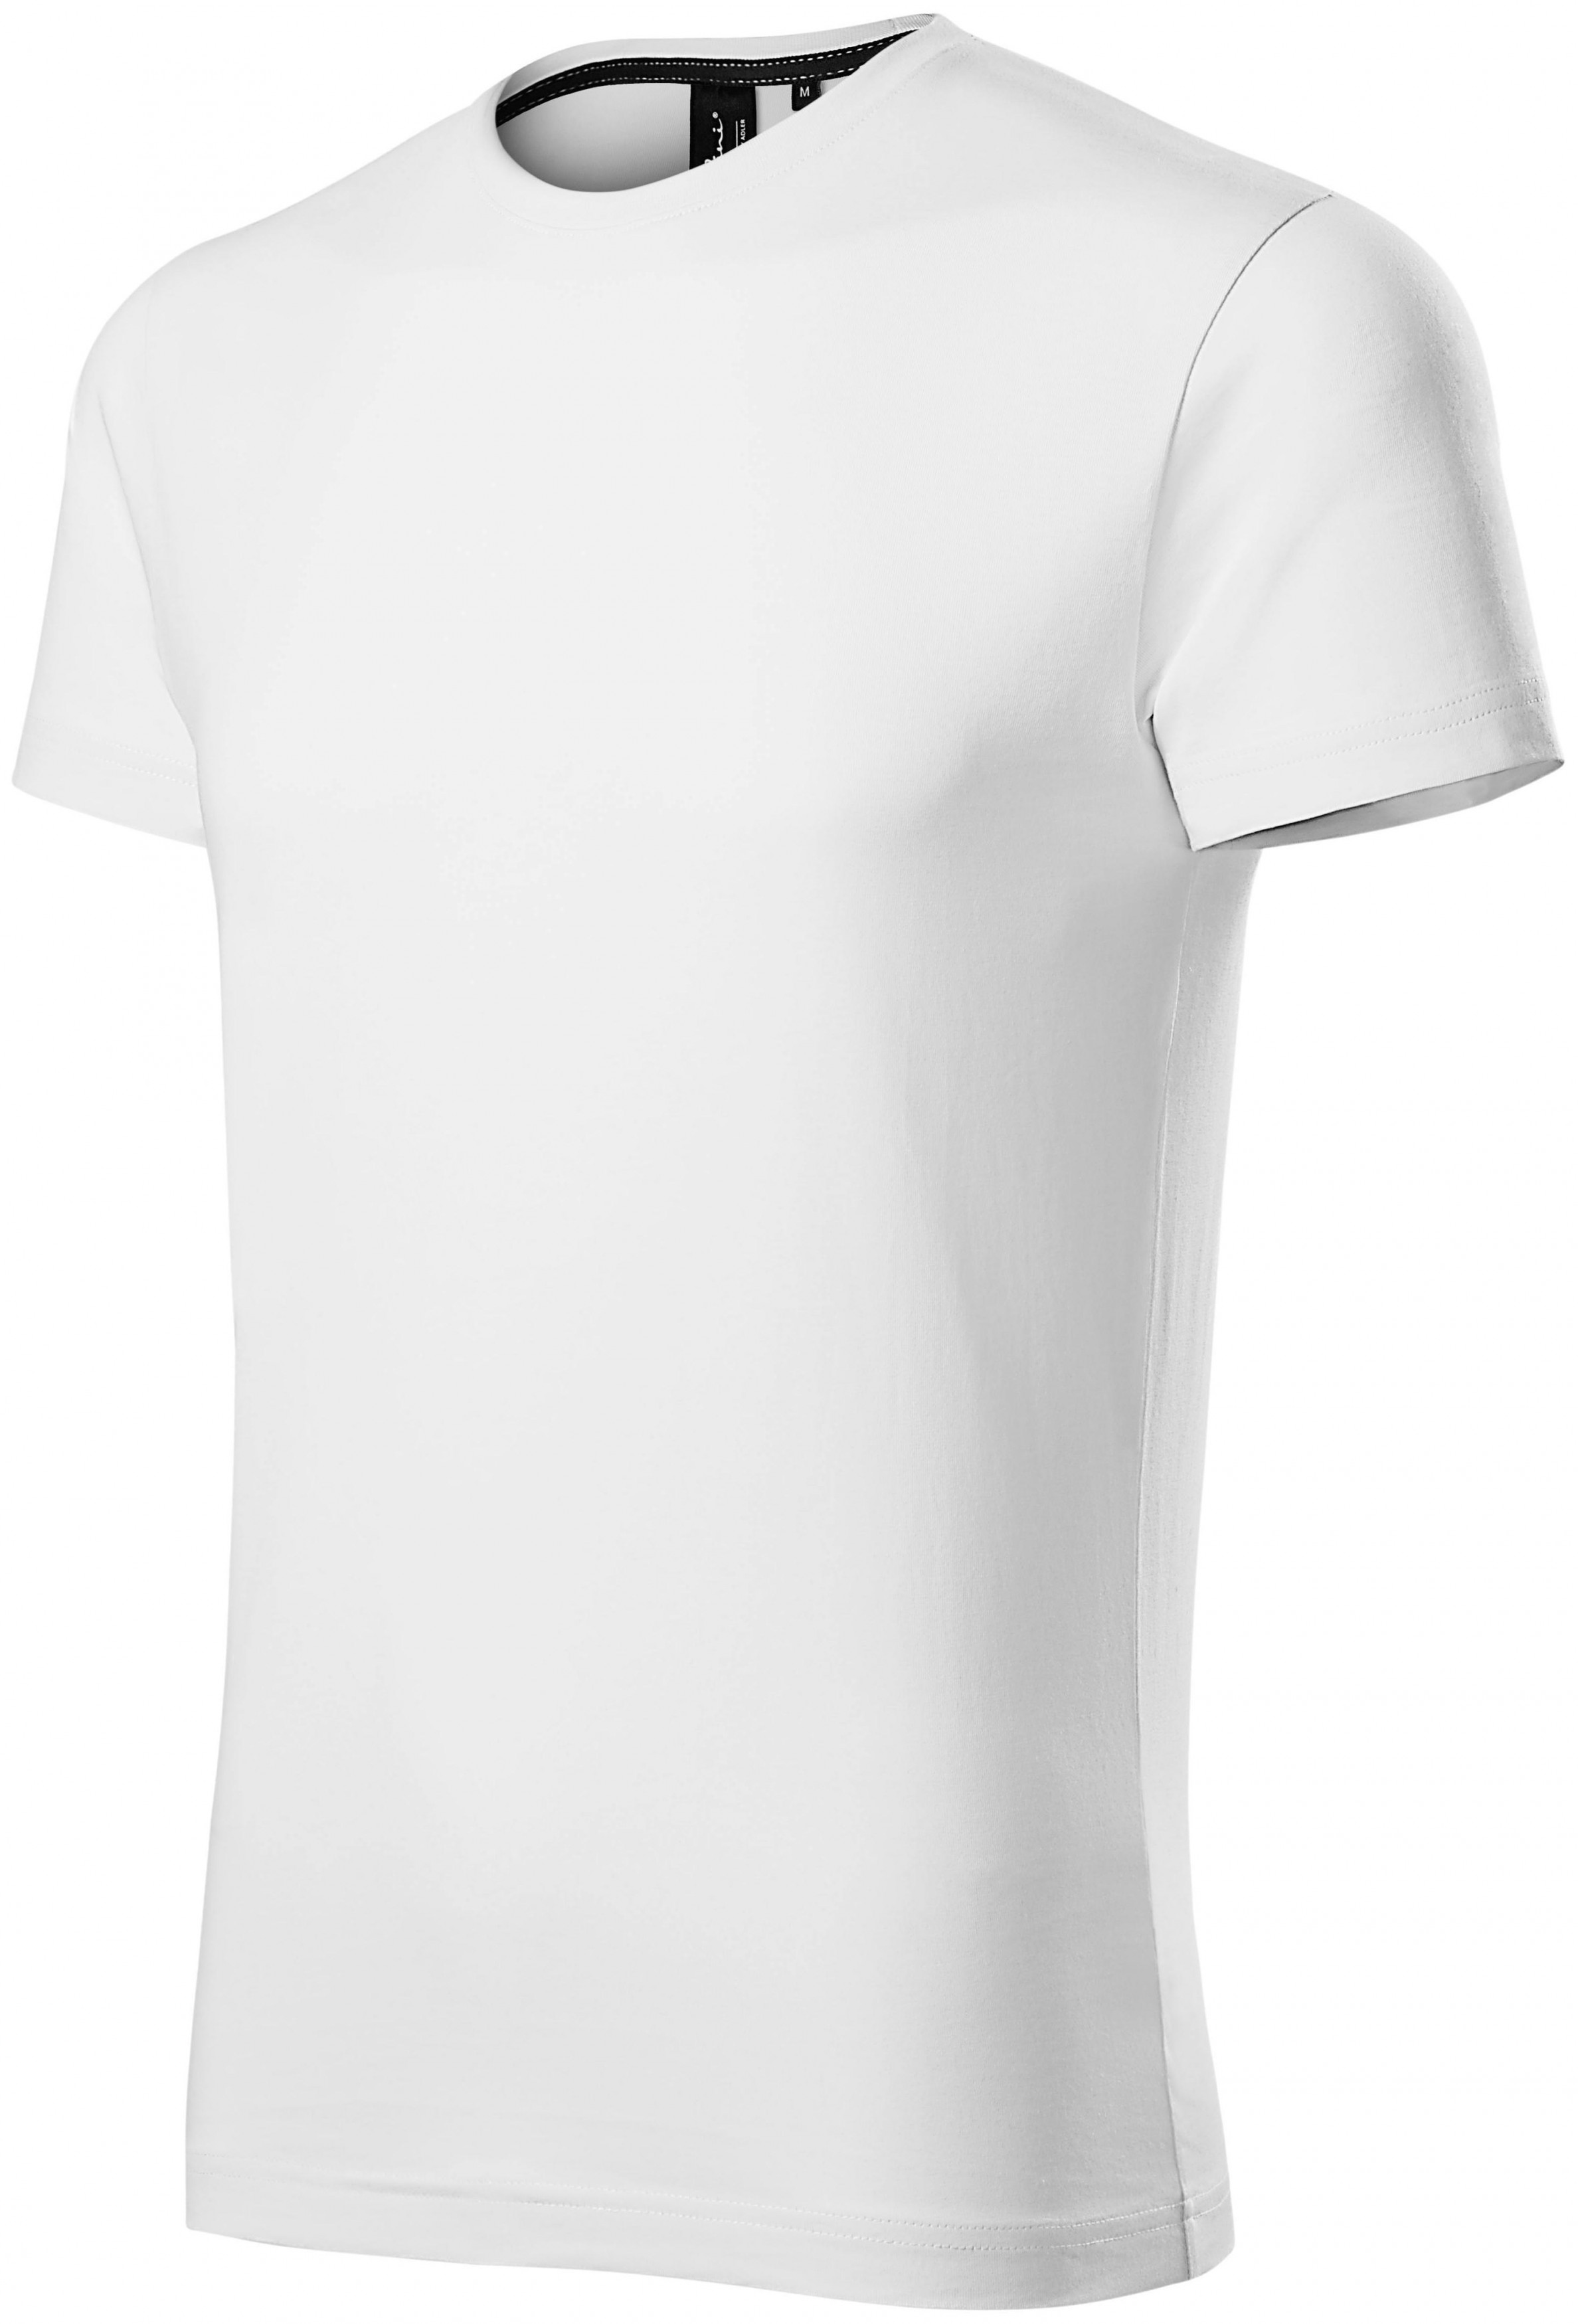 Exkluzívne pánske tričko, biela, L